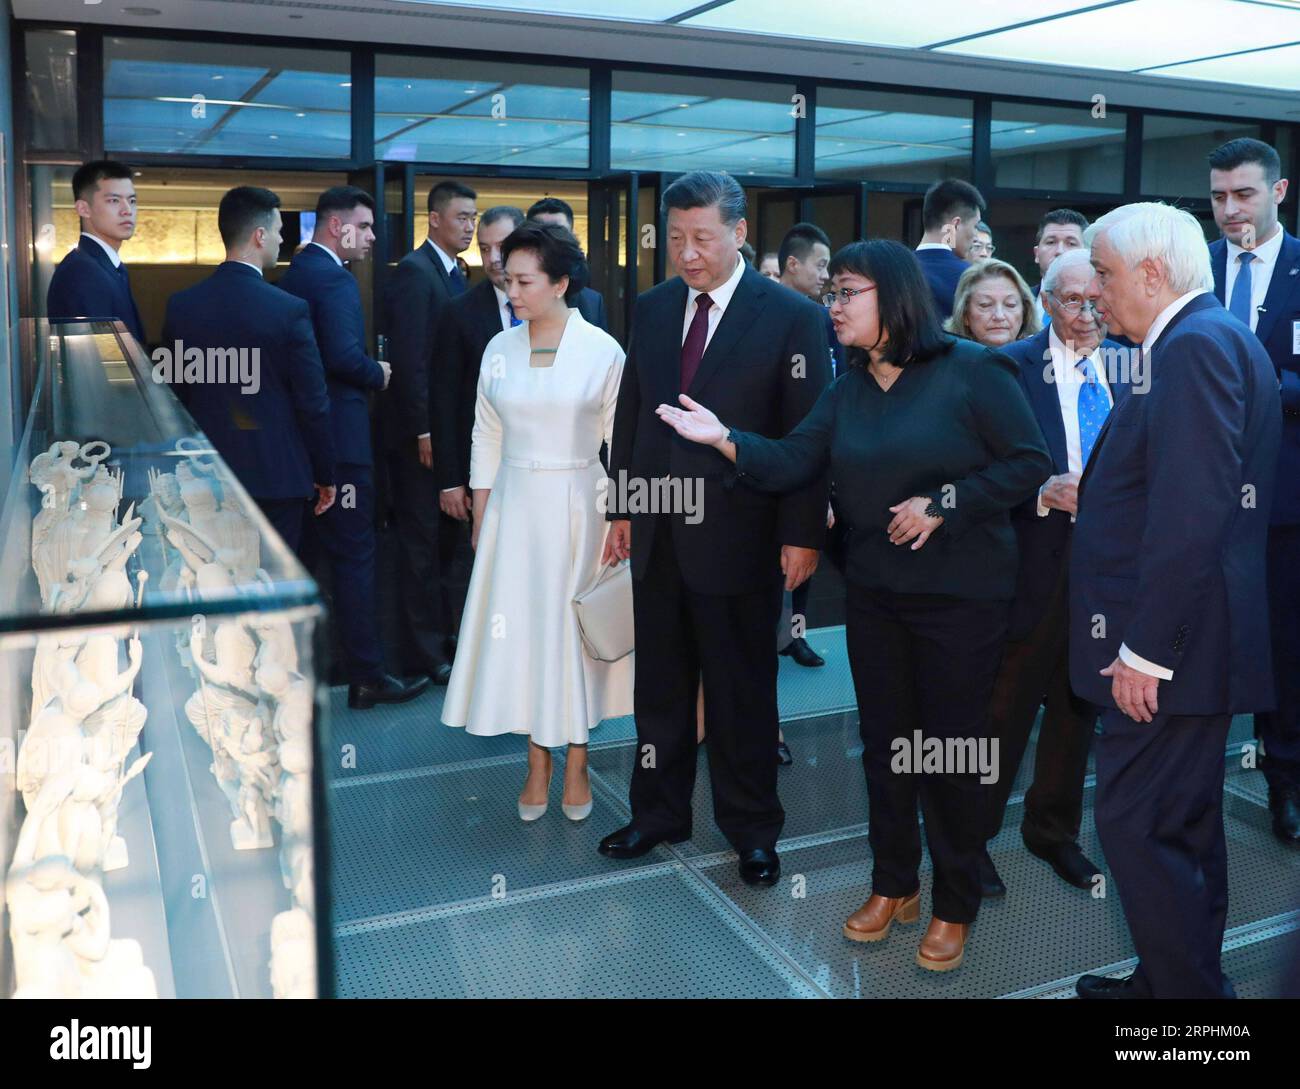 191112 -- ATENE, 12 novembre 2019 -- il presidente cinese Xi Jinping e sua moglie Peng Liyuan visitano il Museo dell'Acropoli accompagnato dal presidente greco Prokopis Pavlopoulos e da sua moglie Vlassia Pavlopoulou-Peltsemi ad Atene, in Grecia, 12 novembre 2019. GRECIA-ATENE-XI JINPING-MUSEO DELL'ACROPOLI DINGXLIN PUBLICATIONXNOTXINXCHN Foto Stock